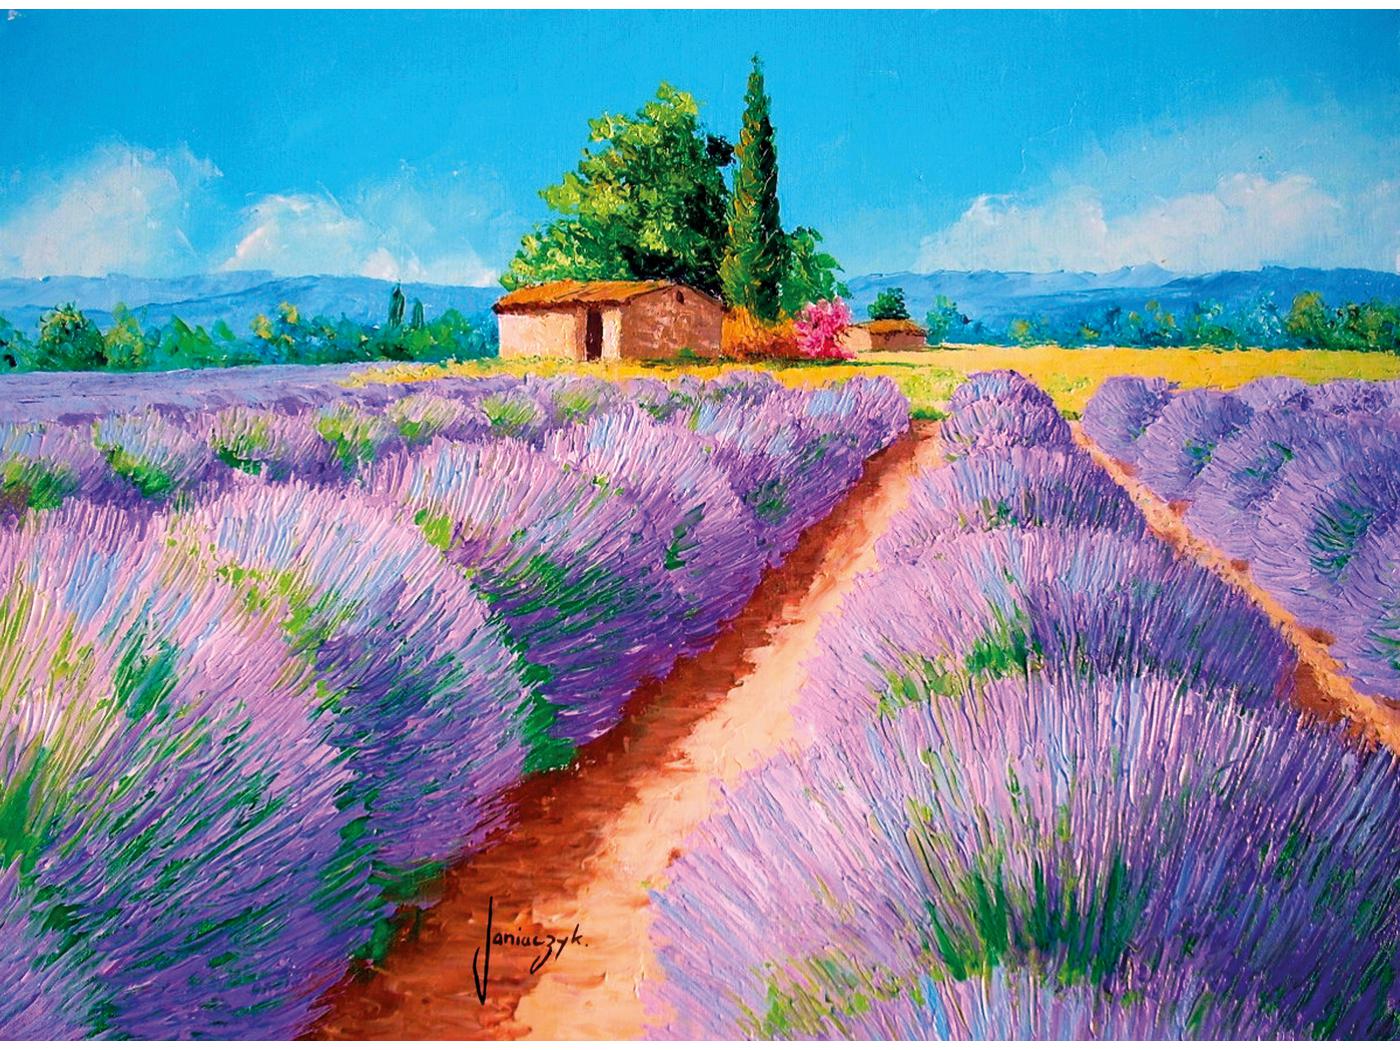 https://www.borntobekids.fr/image/426946/1400x1050/1/clementoni-35073-puzzle-adulte-500-pieces-lavender-scent-1400.jpg